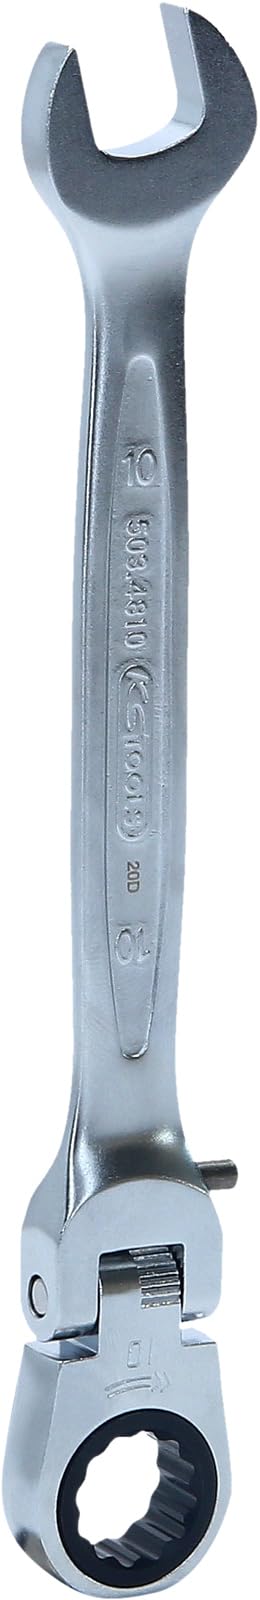 Gelenk-GEARplus Schlüssel 10mm / 86,16Nm mit Verriegelung, verchromt, satin-matt, auf Hänger von KS Tools